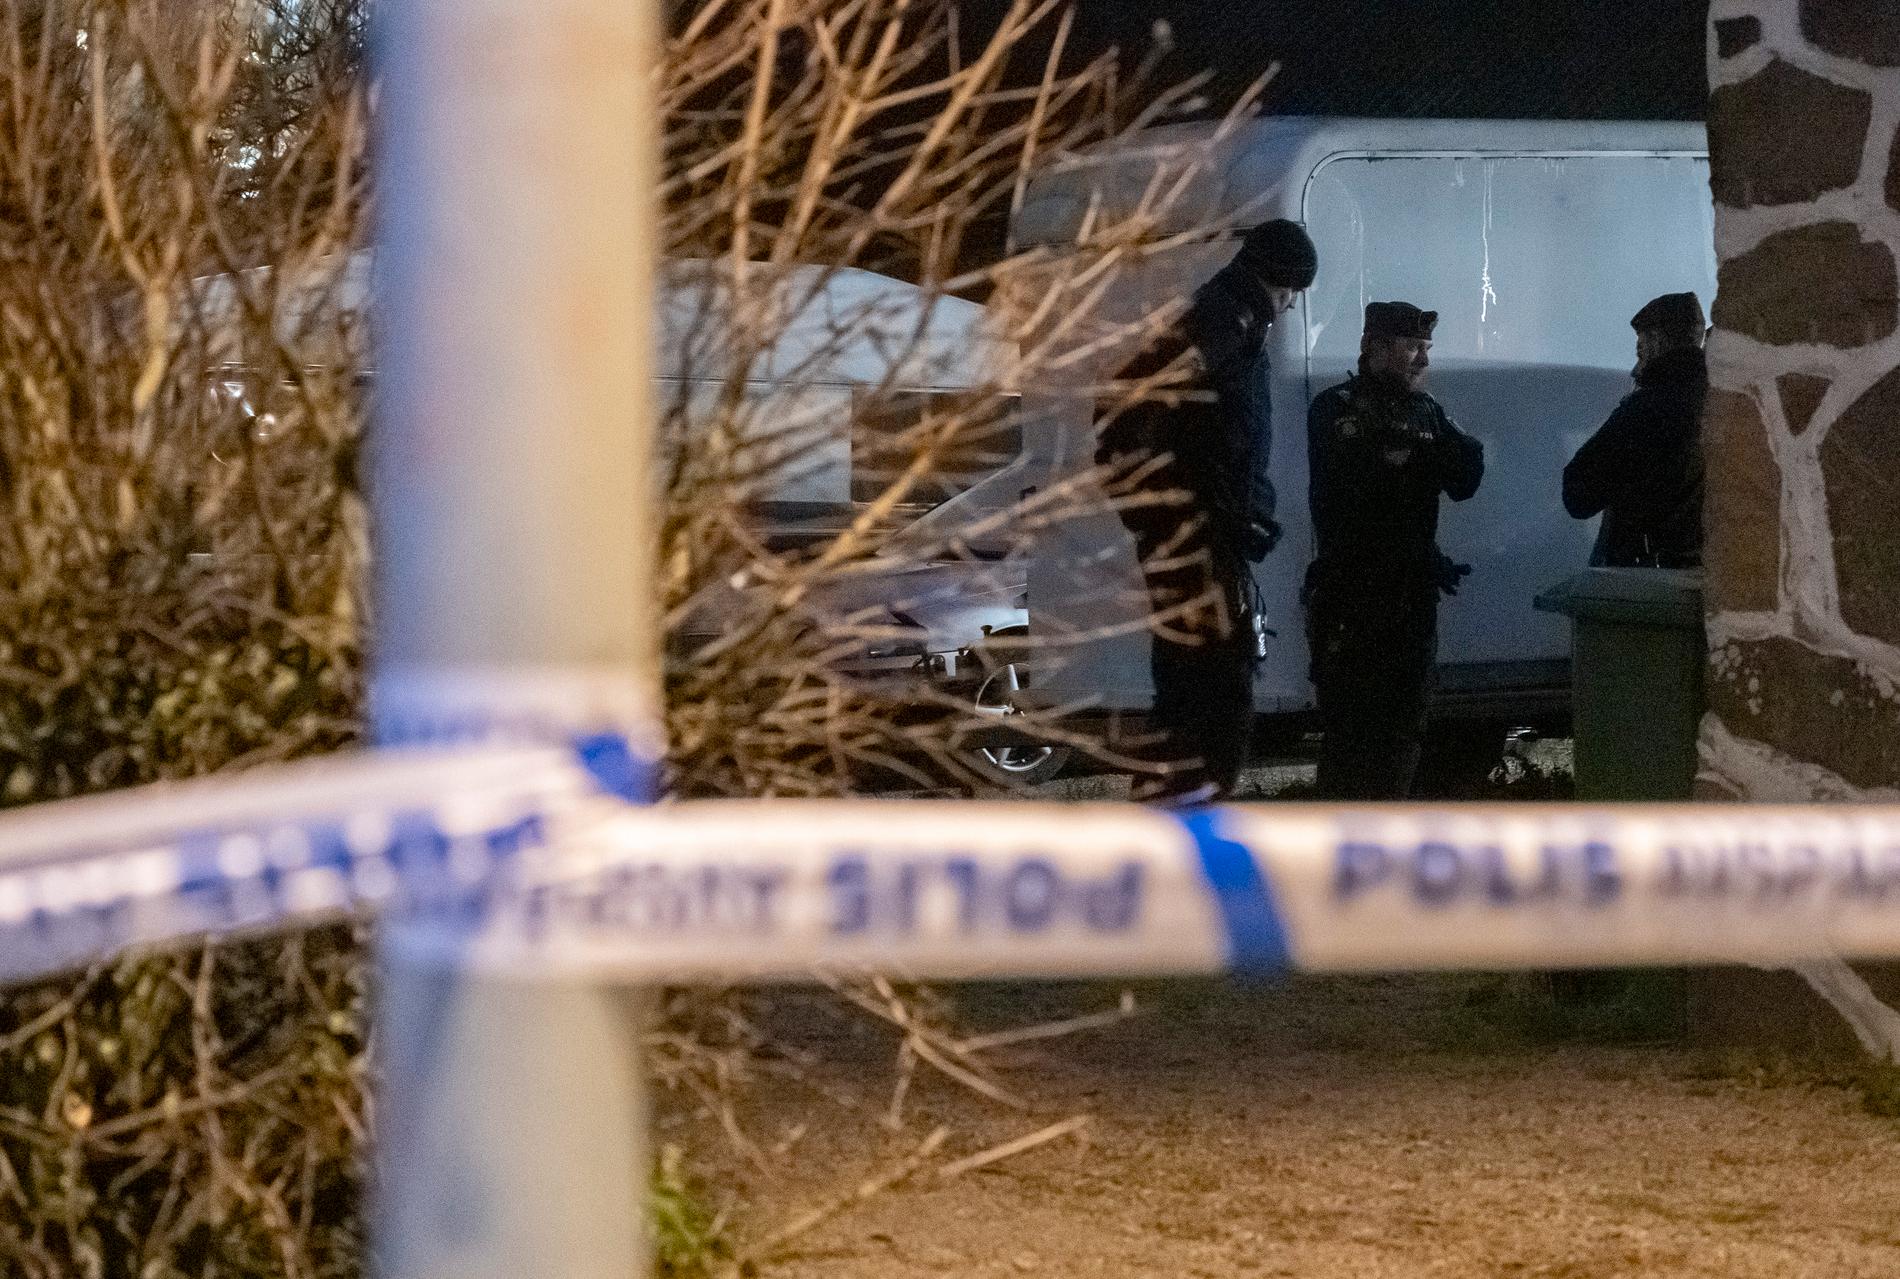 Polis och avspärrningar vid en fastighet i Åstorp efter att en person har hittats död. Personen hittades av en privatperson som slog larm, skriver polisen på sin hemsida.